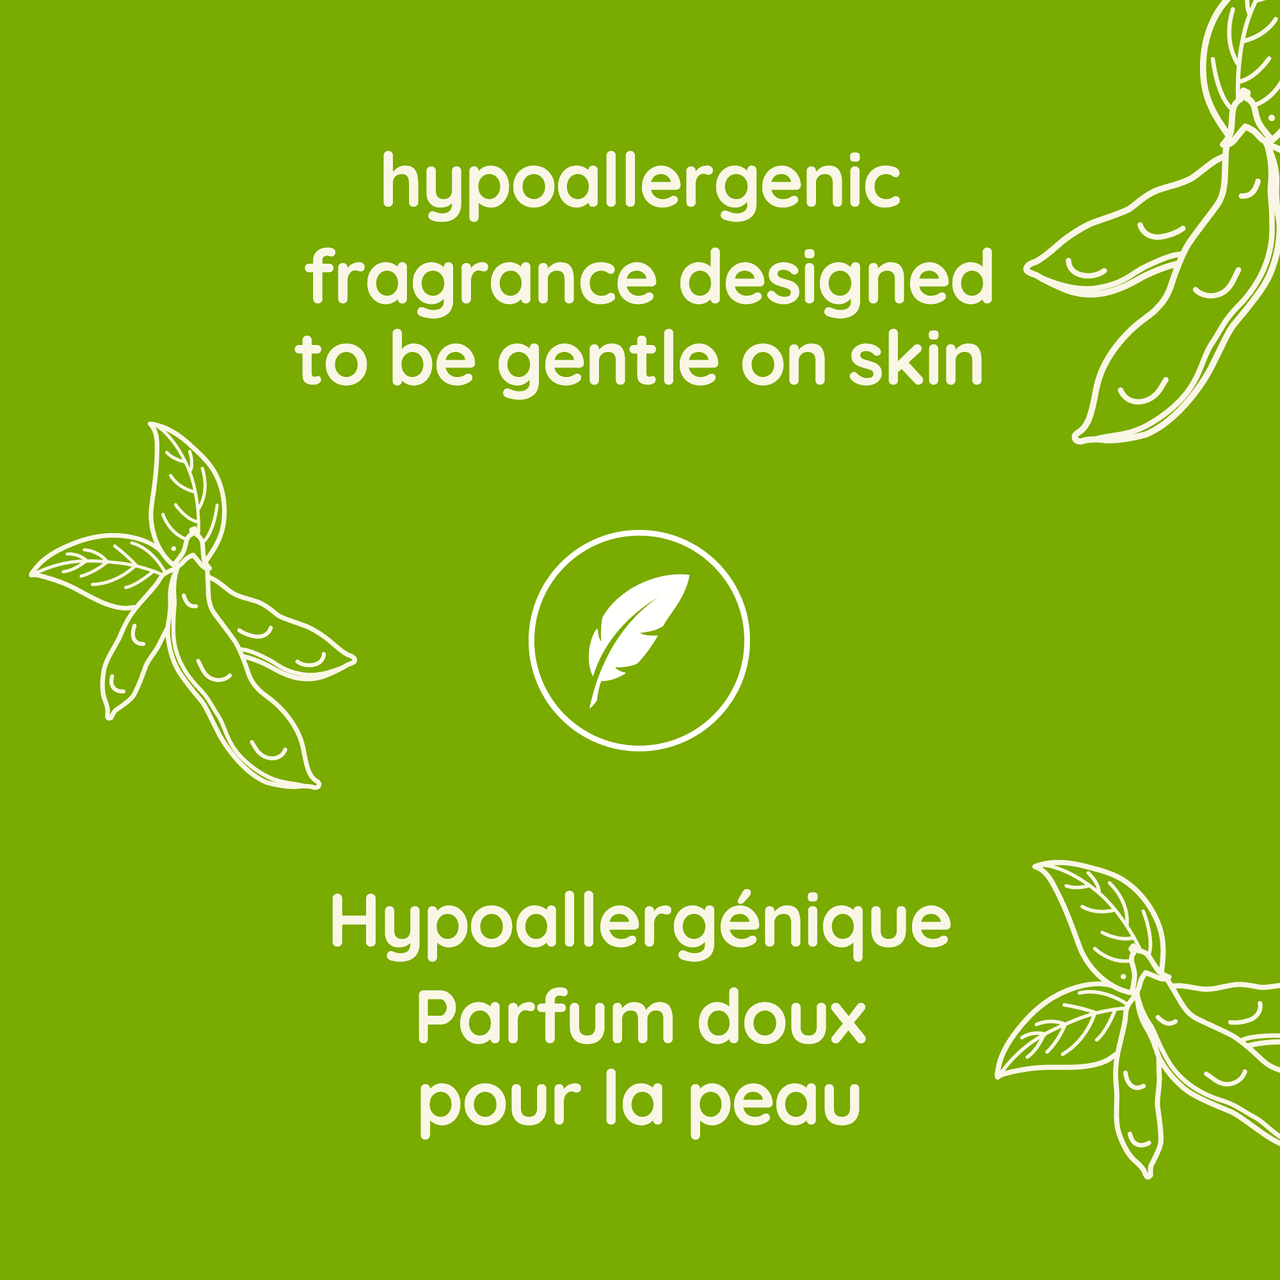 Mention « Hypoallergénique, Parfum doux pour la peau »